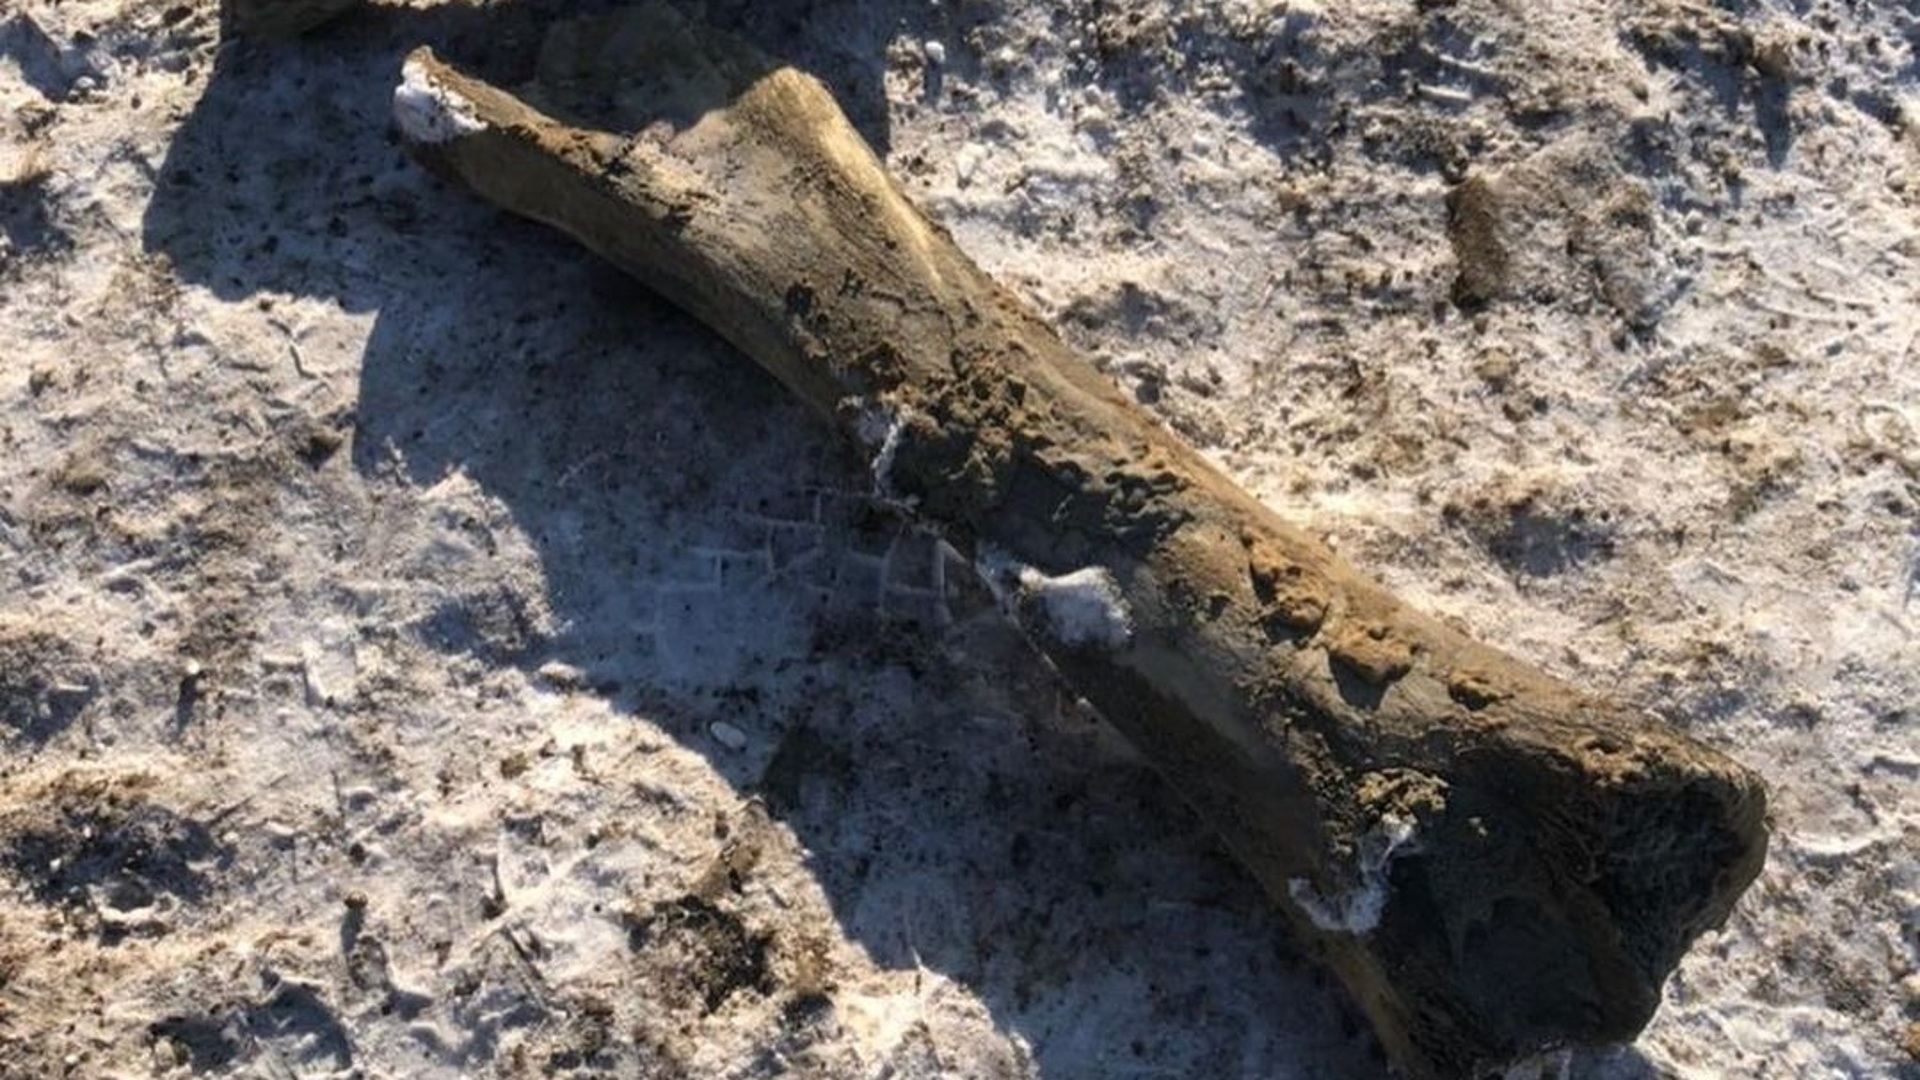 Березовский мамонт фото с места находки